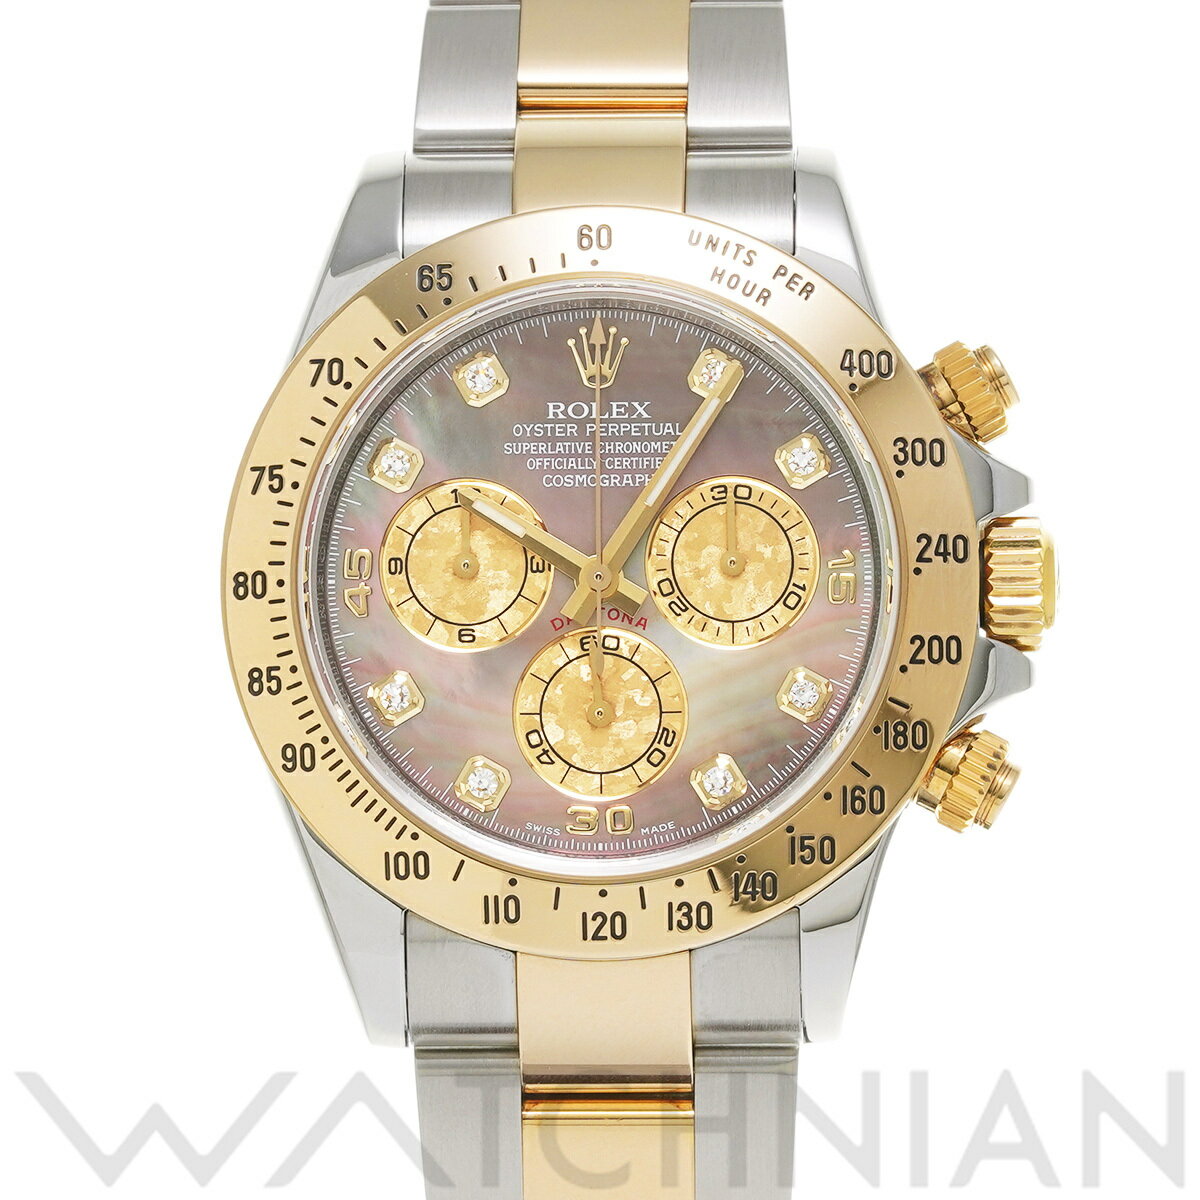  ロレックス ROLEX コスモグラフ デイトナ 116523NG V番(2009年頃製造) ブラックシェル/ゴールドクリスタル/ダイヤモンド メンズ 腕時計 ロレックス 時計 高級腕時計 ブランド